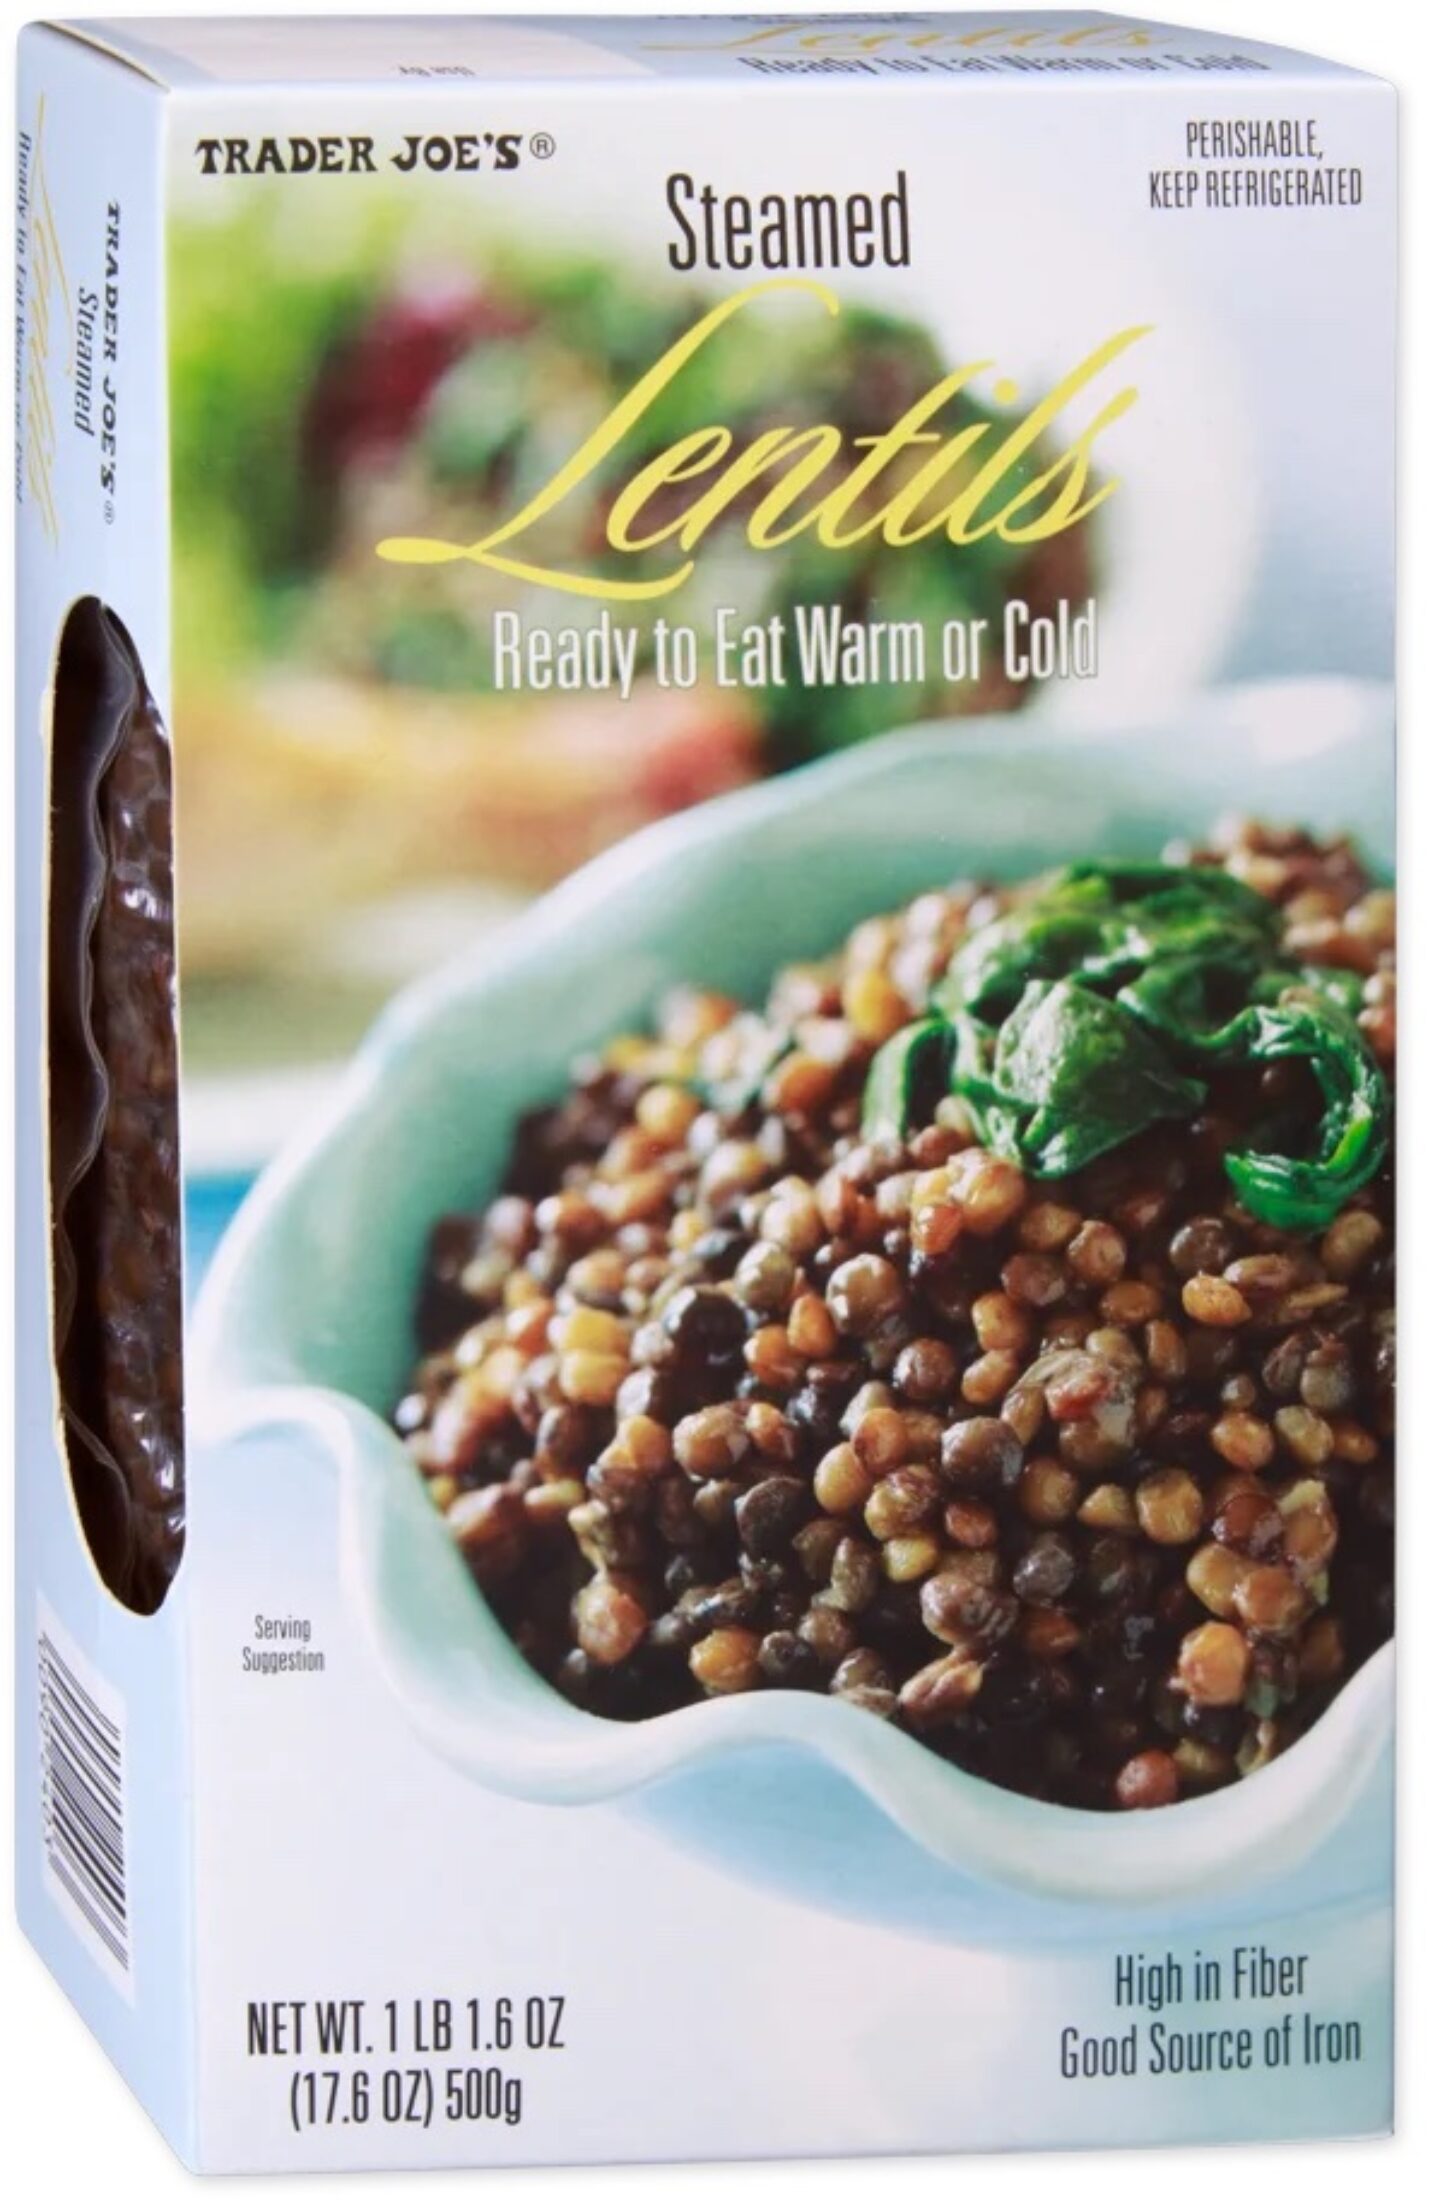 trader joes steamed lentils